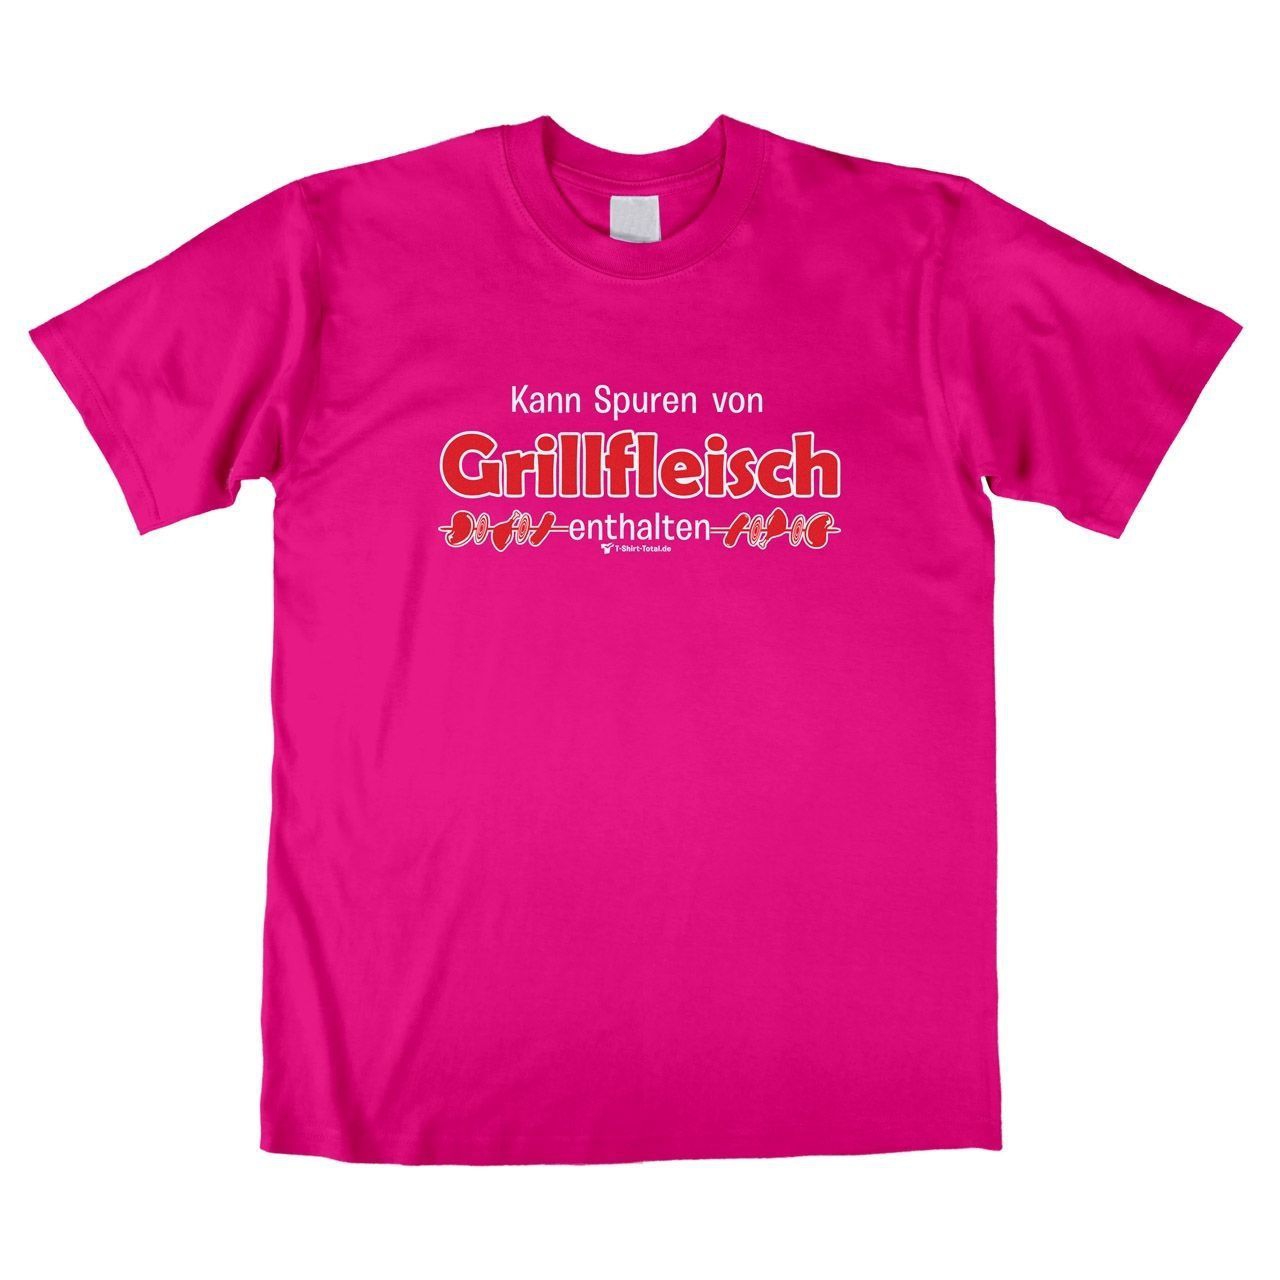 Spuren von Grillfleisch Unisex T-Shirt pink Extra Large